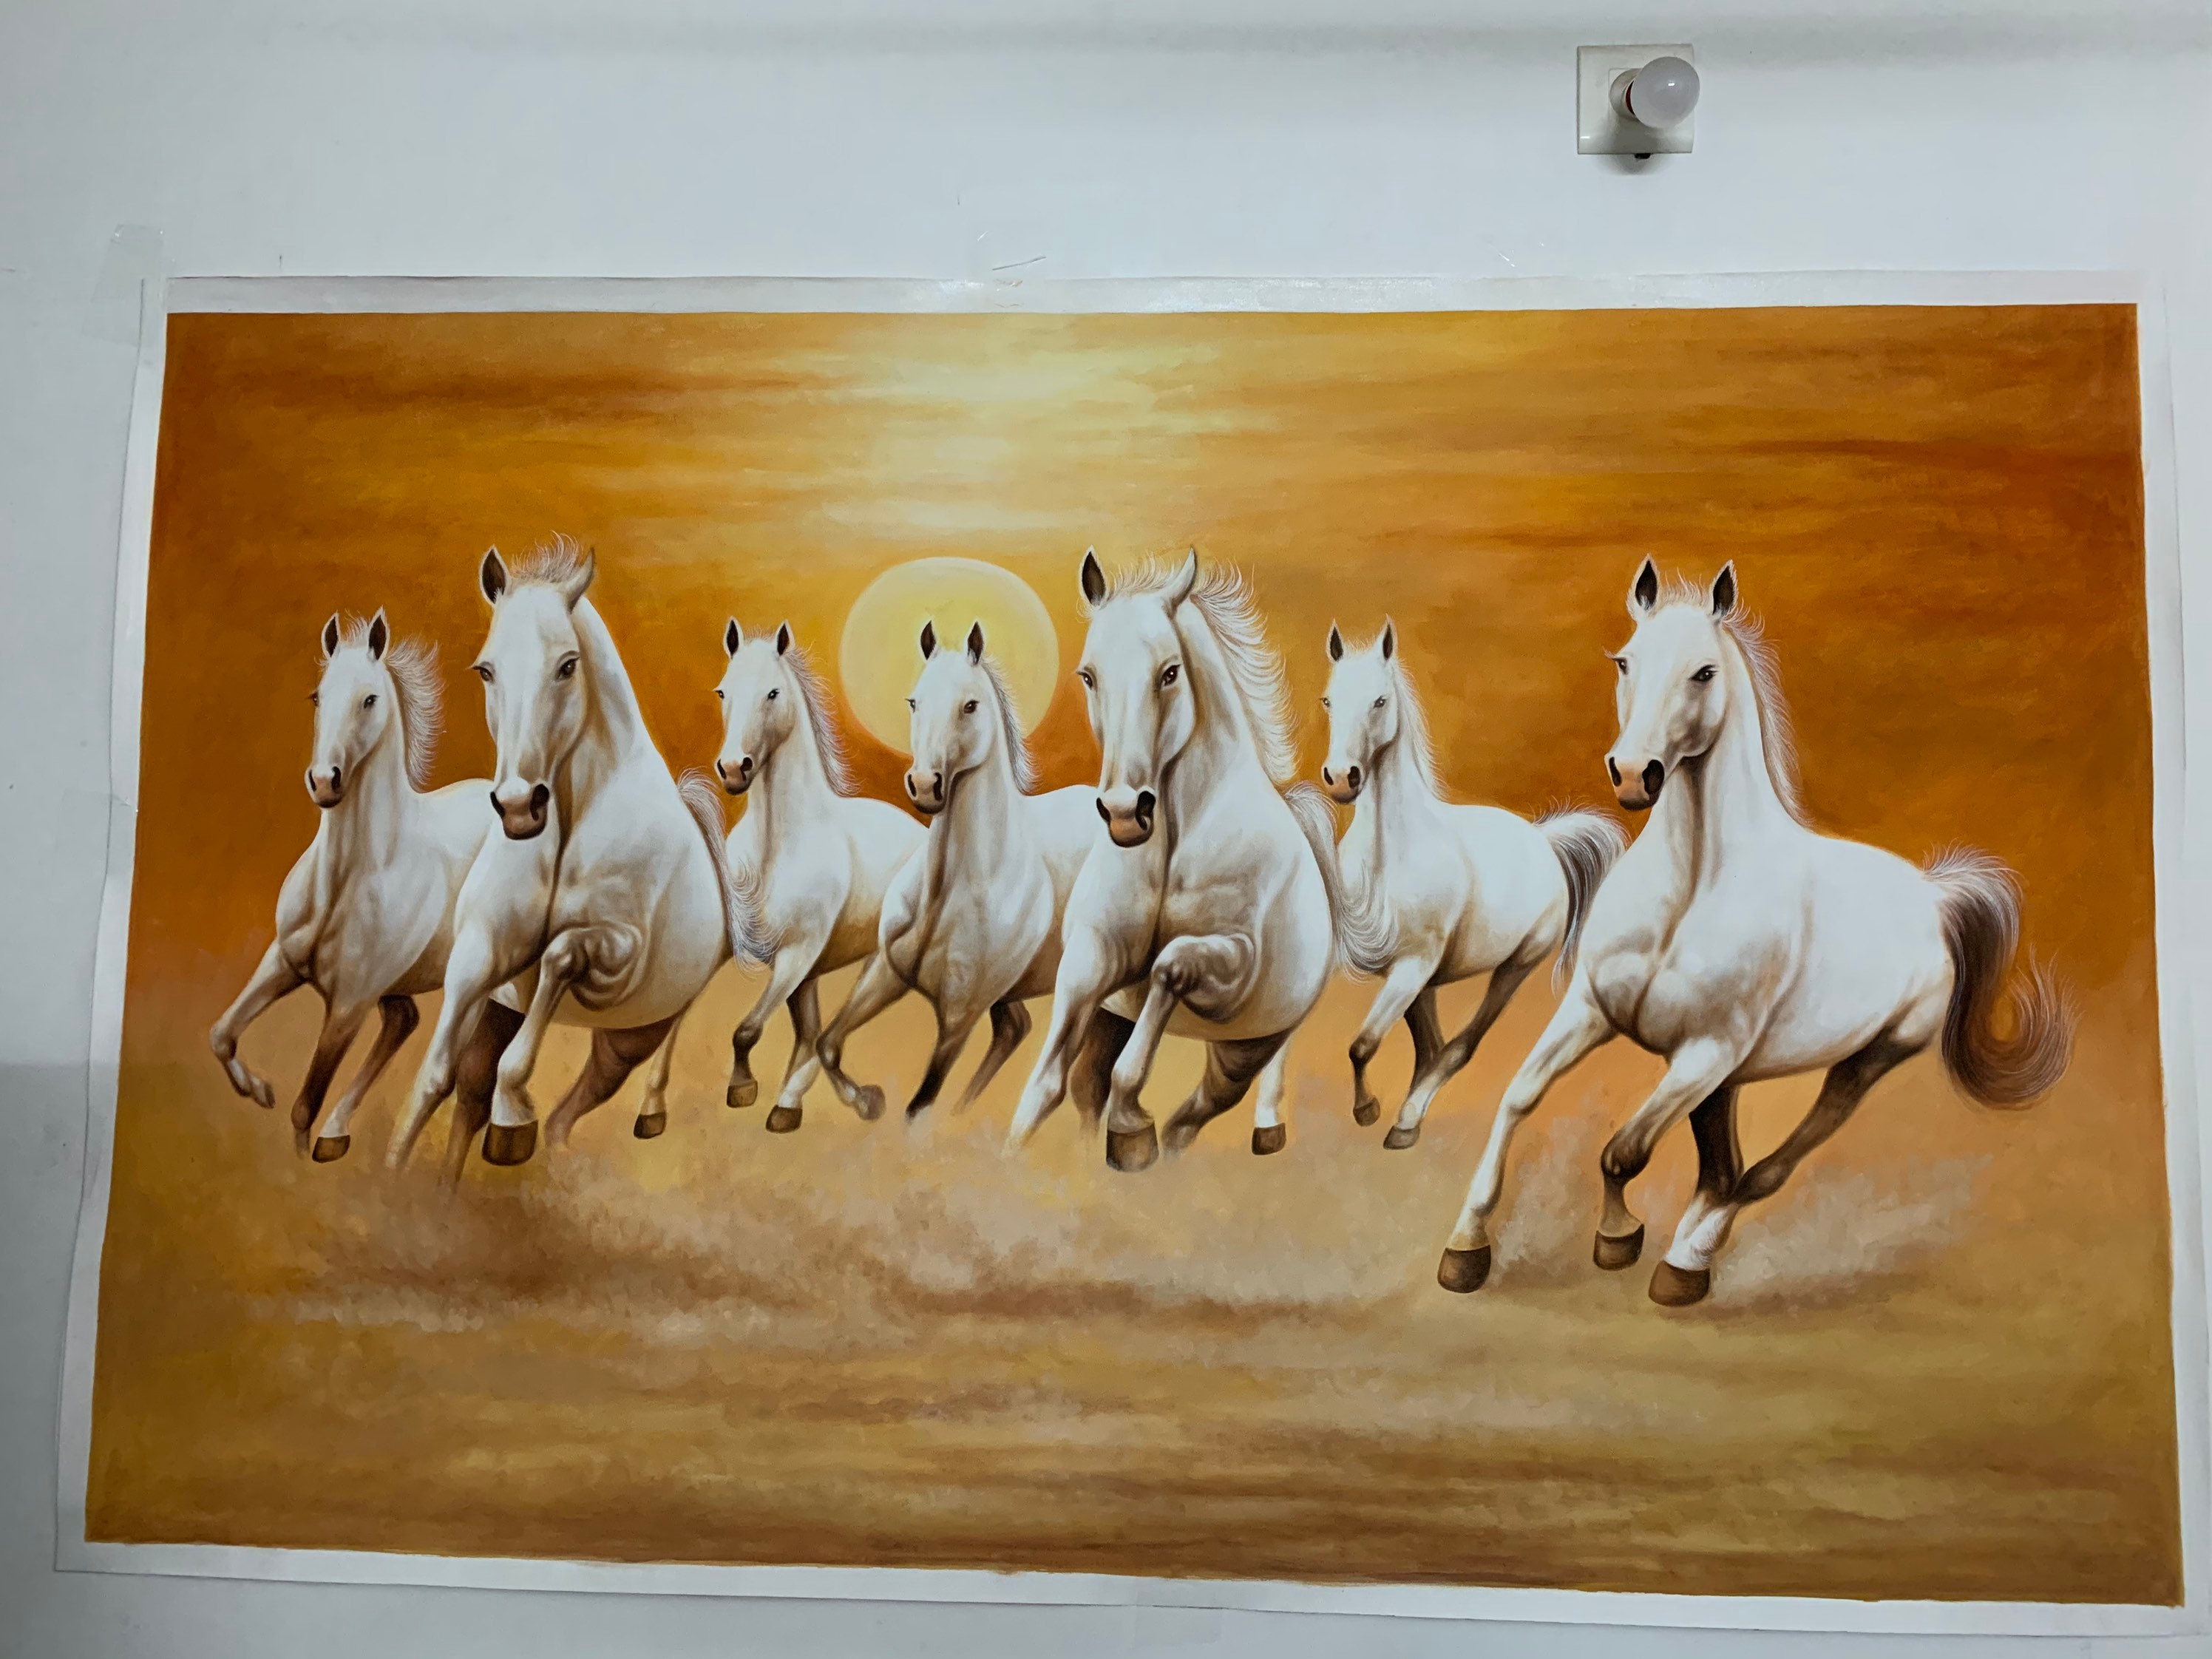 Seven Horses Vastu Wallpaper, Size: 6x3